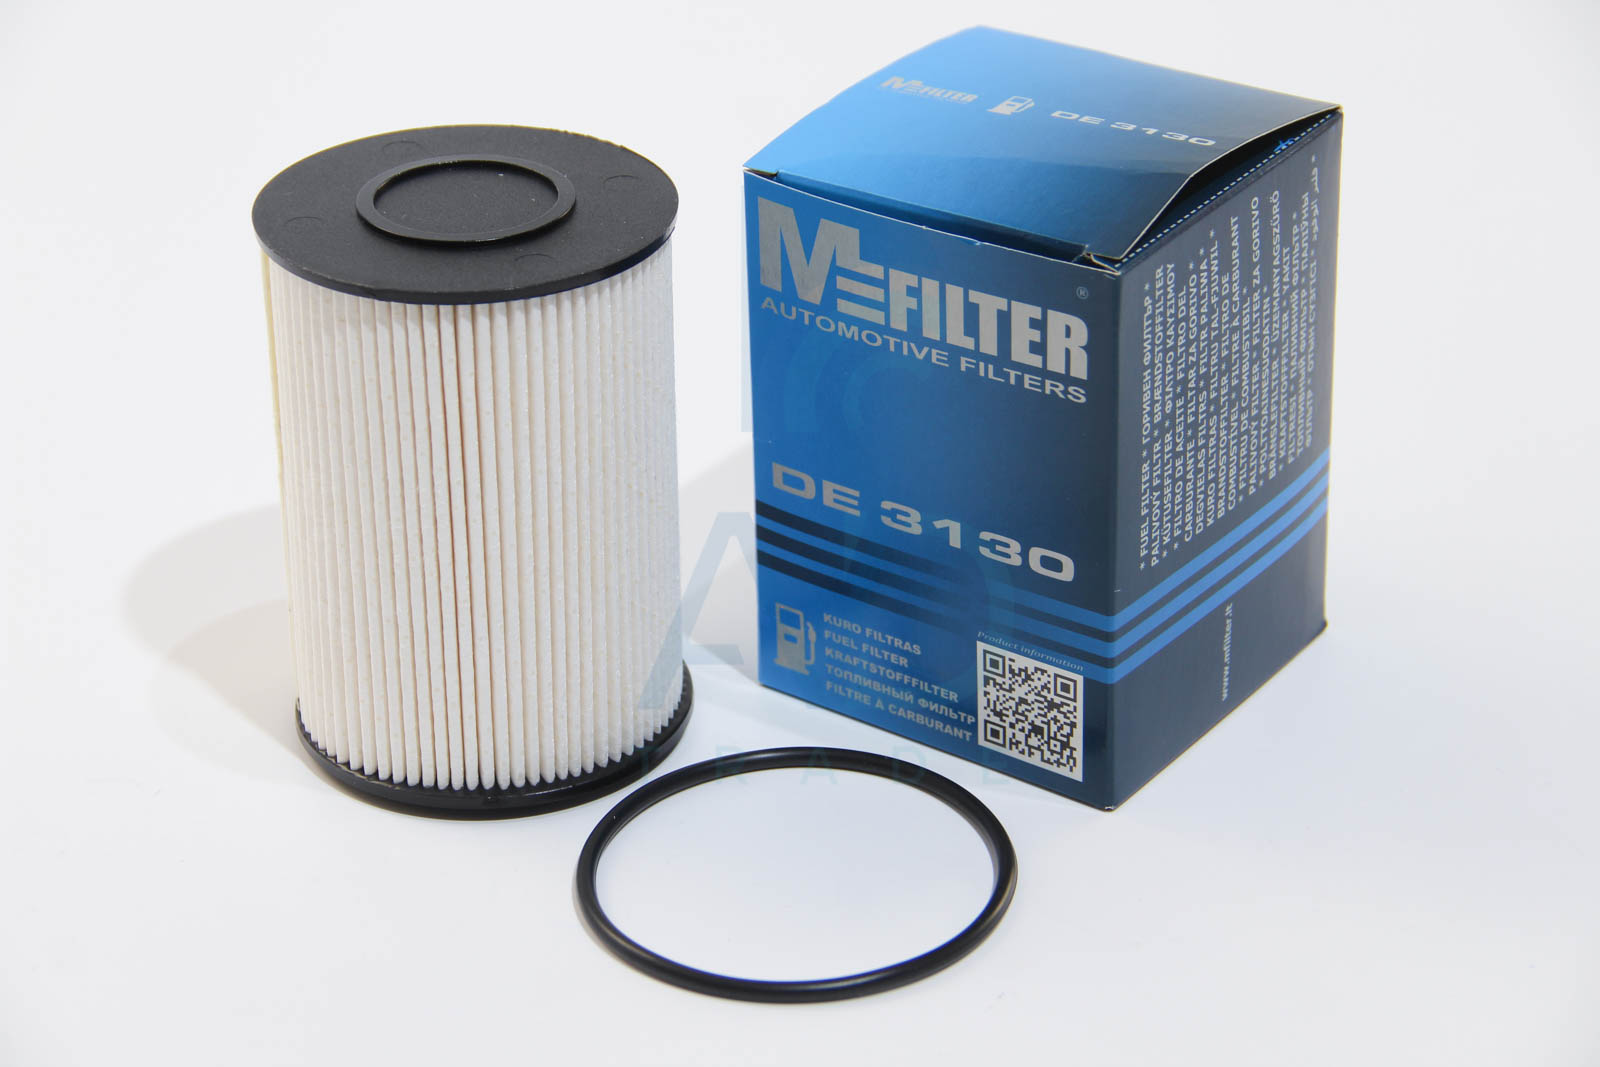 Фильтр топливный SKODA  Octavia II(M-Filter) MANN-FILTER арт. DE 3130